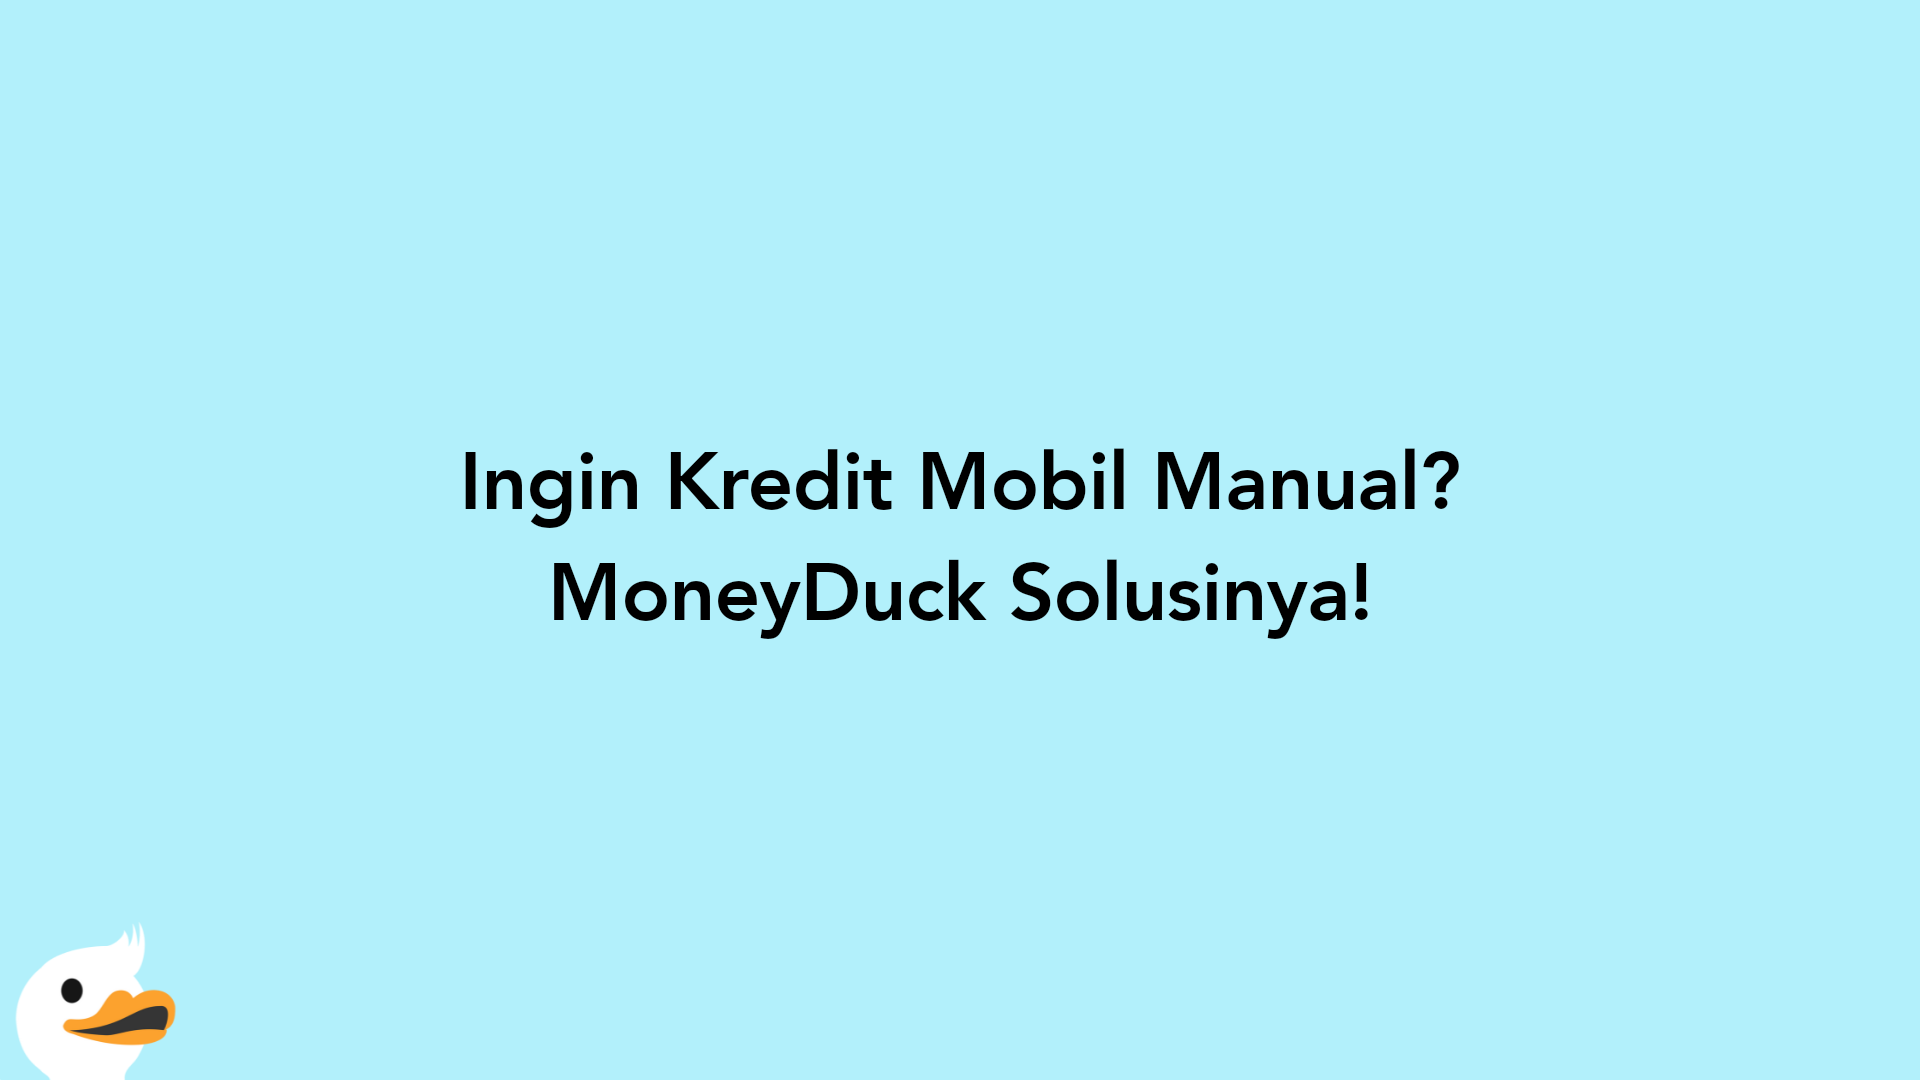 Ingin Kredit Mobil Manual? MoneyDuck Solusinya!